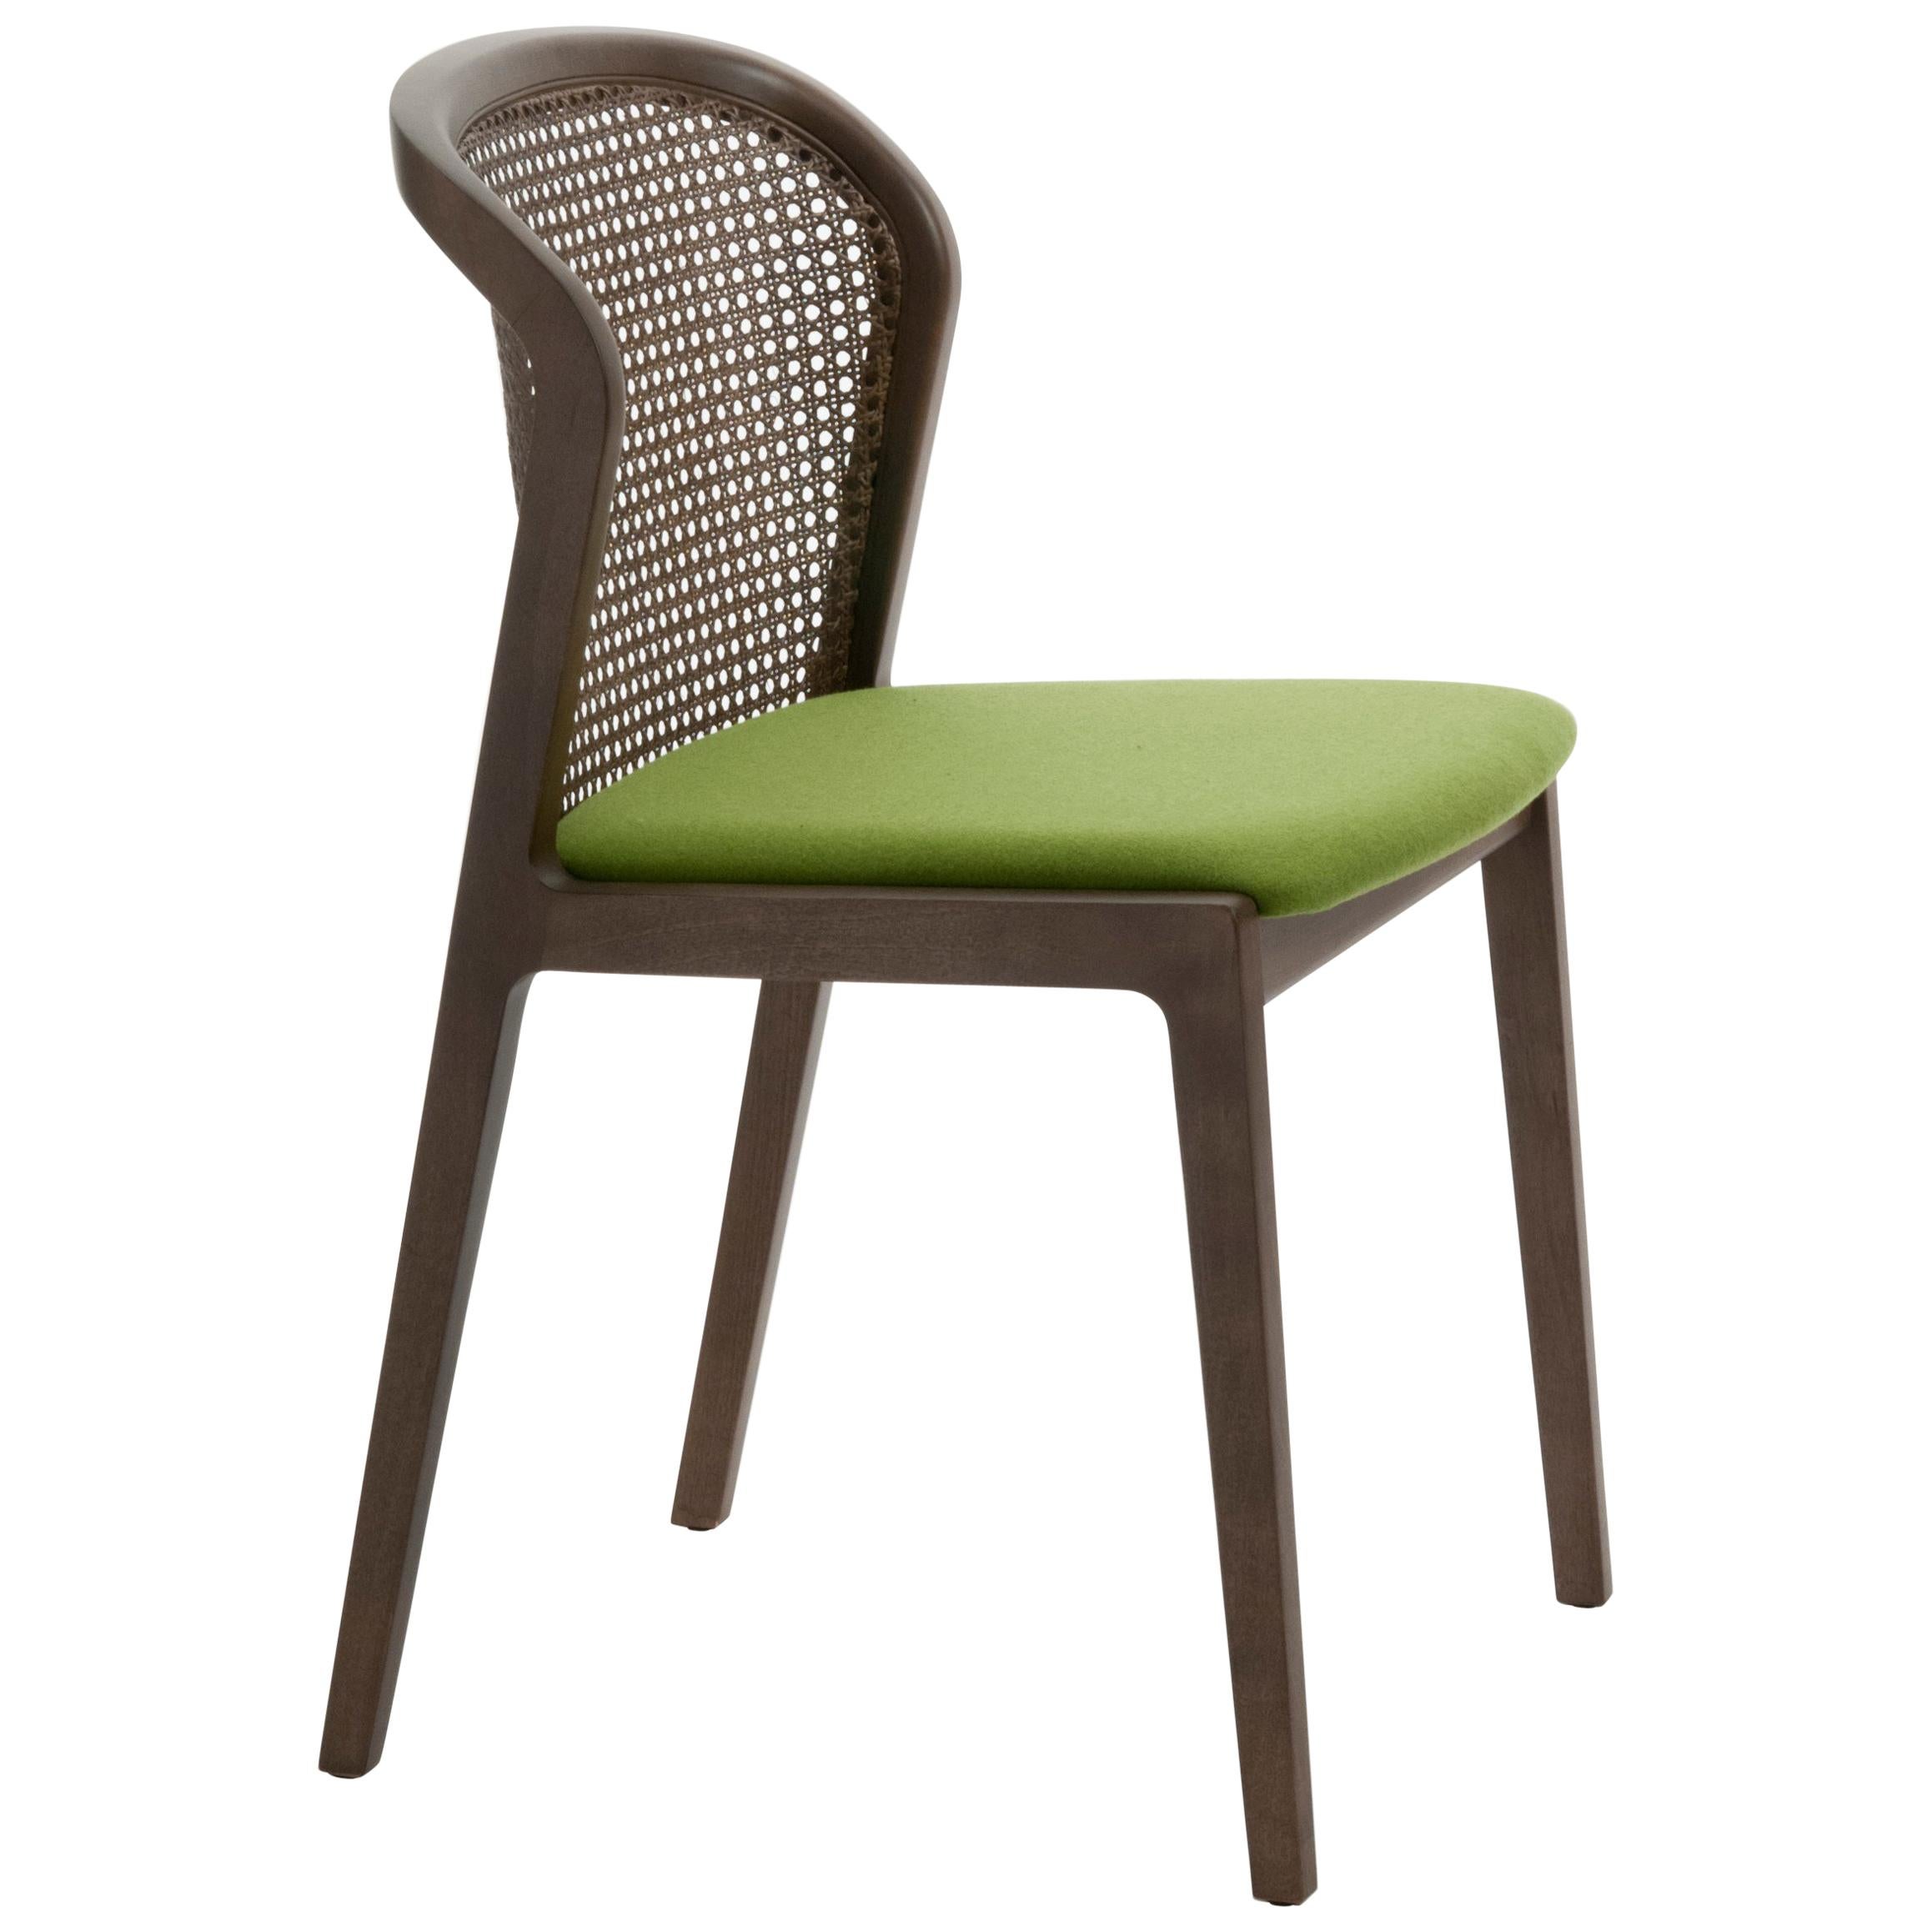 Chaise Vienne, design contemporain inspiré par les chaises traditionnelles en paille